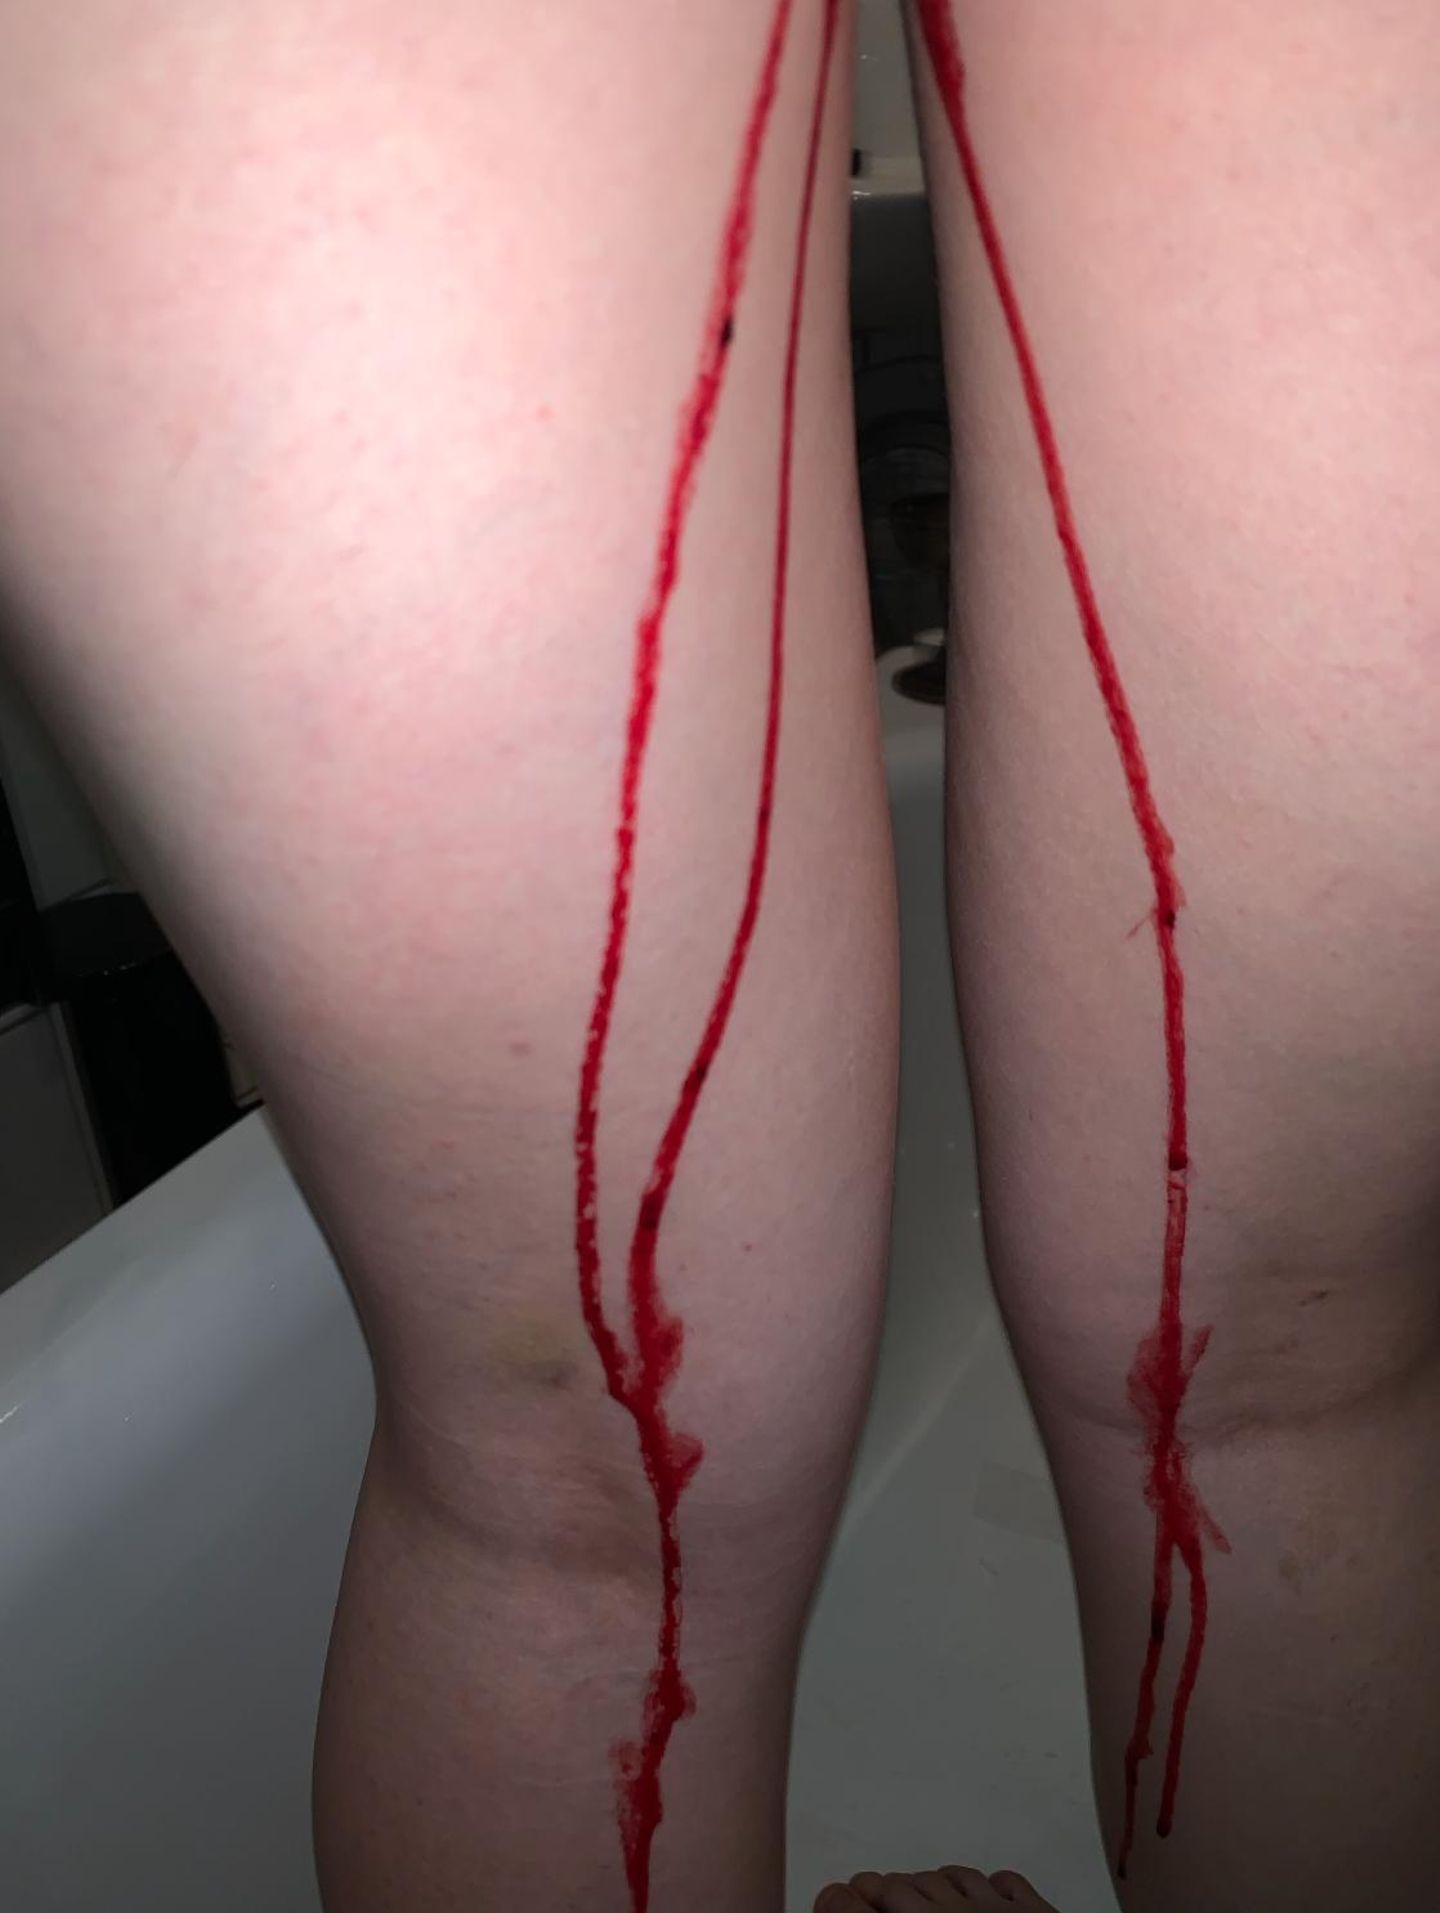 How we bleed: Beine mit Blut